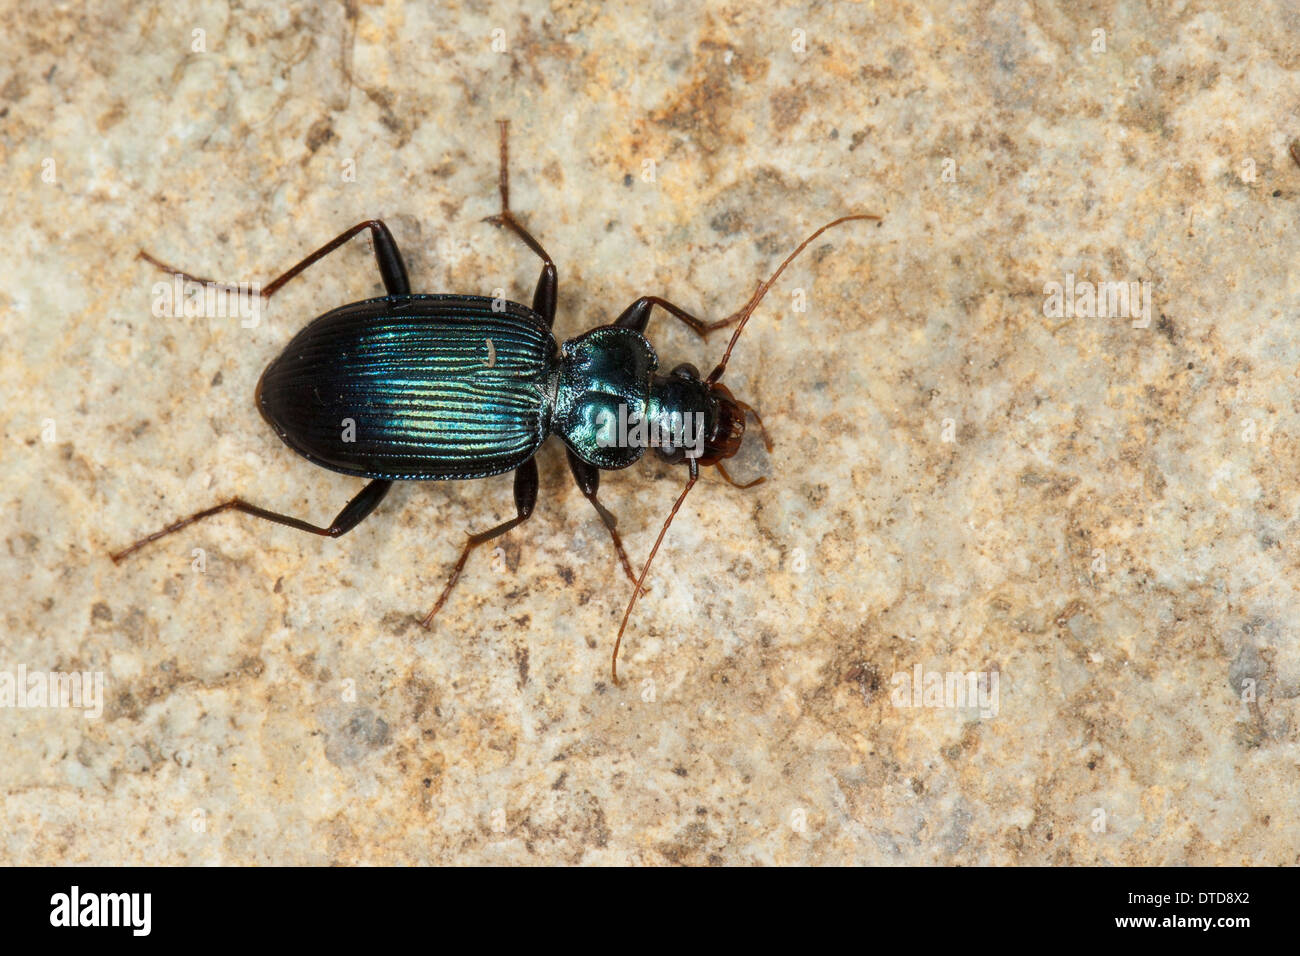 Ground beetle, Blauer Bartläufer, Blauer Dornbart, Laufkäfer, Leistus spinibarbis, Pogonophorus spinibarbis Stock Photo